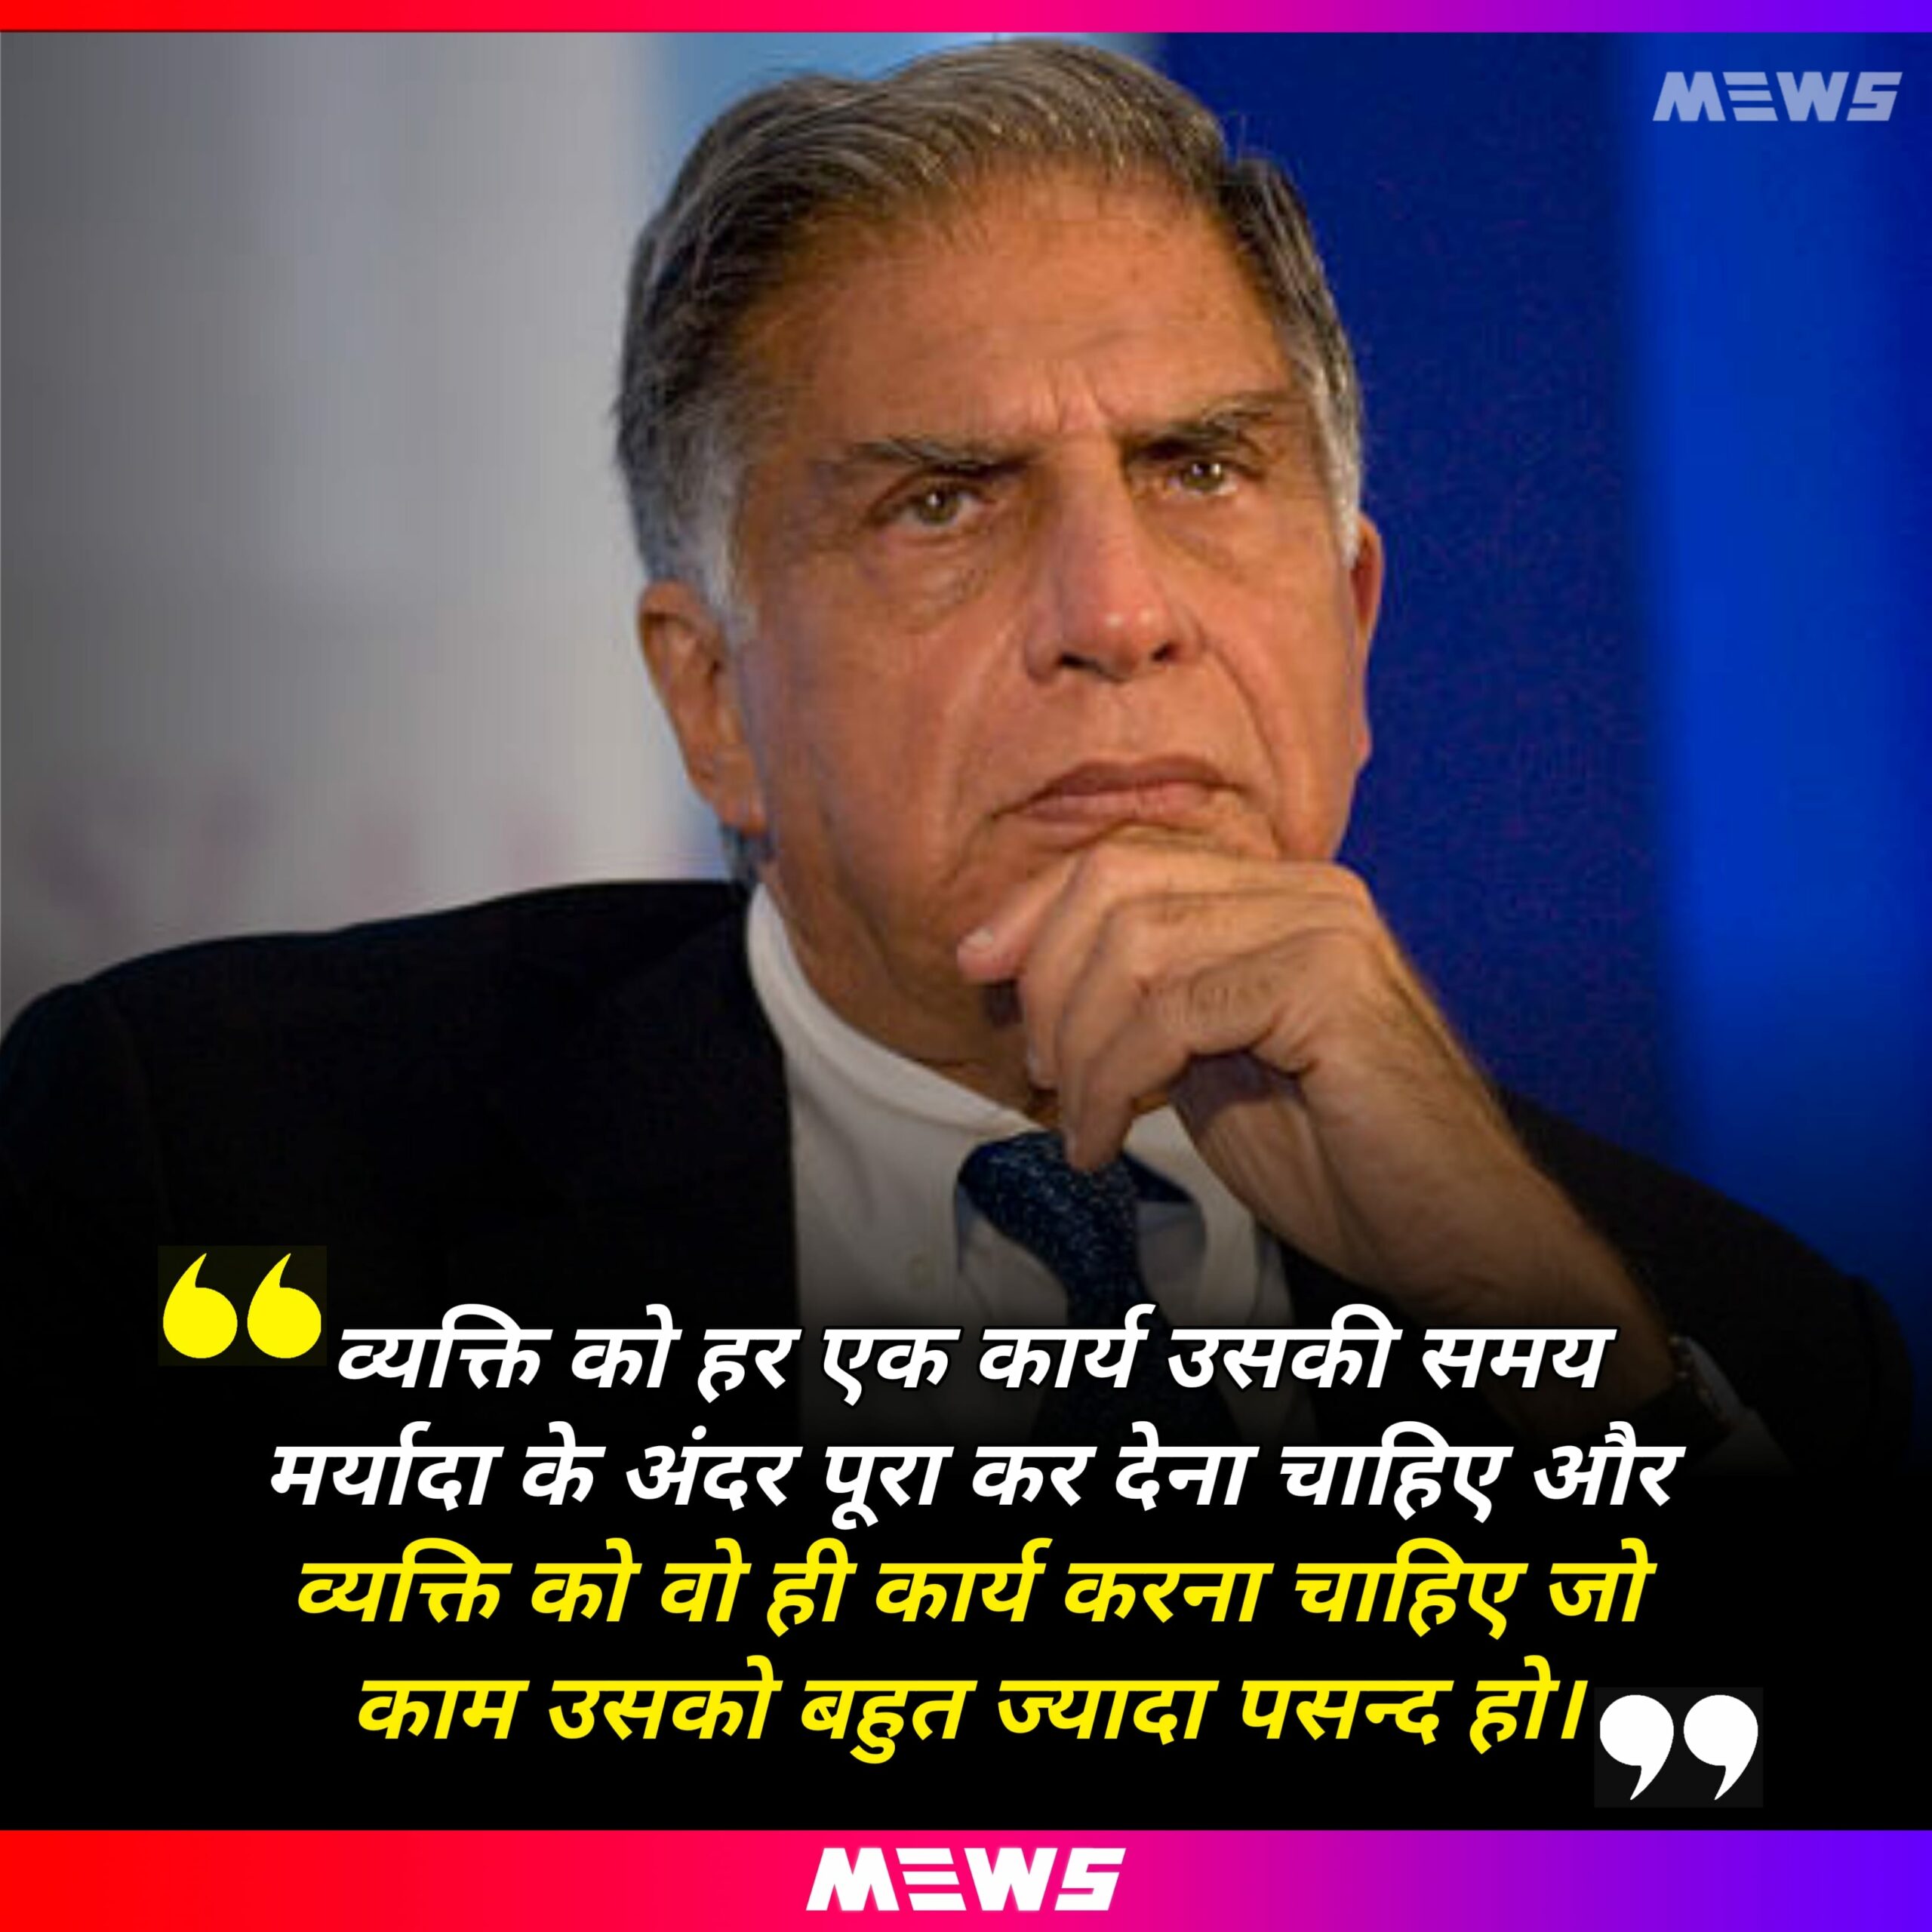 Quotes of Ratan Tata in Hindi